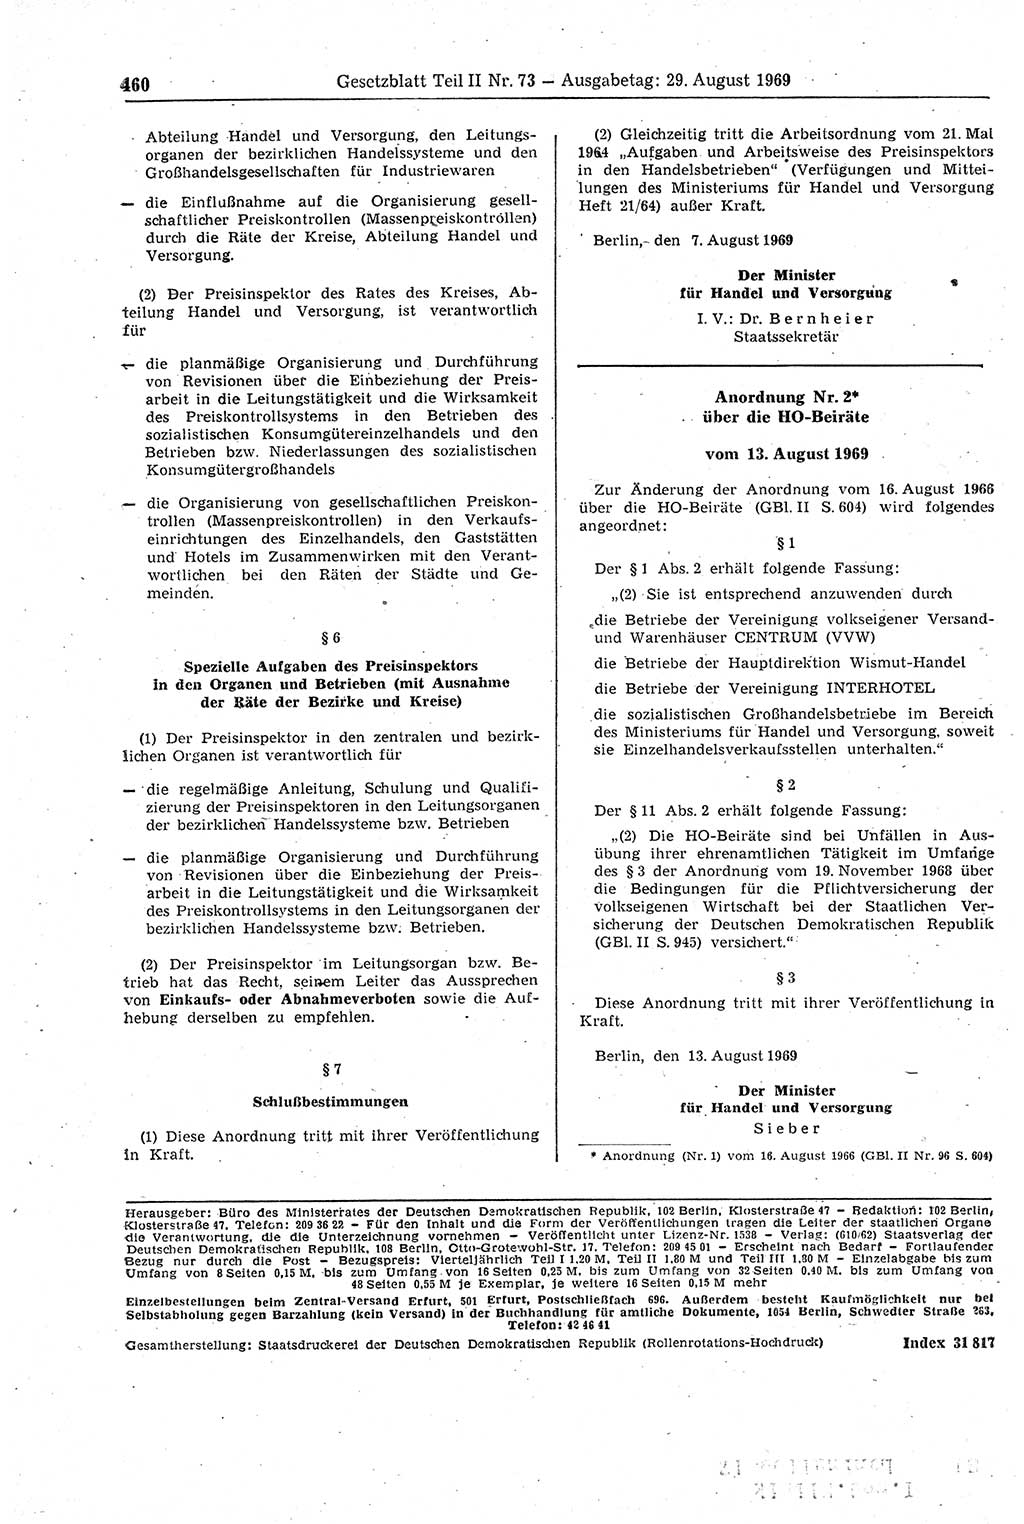 Gesetzblatt (GBl.) der Deutschen Demokratischen Republik (DDR) Teil ⅠⅠ 1969, Seite 460 (GBl. DDR ⅠⅠ 1969, S. 460)